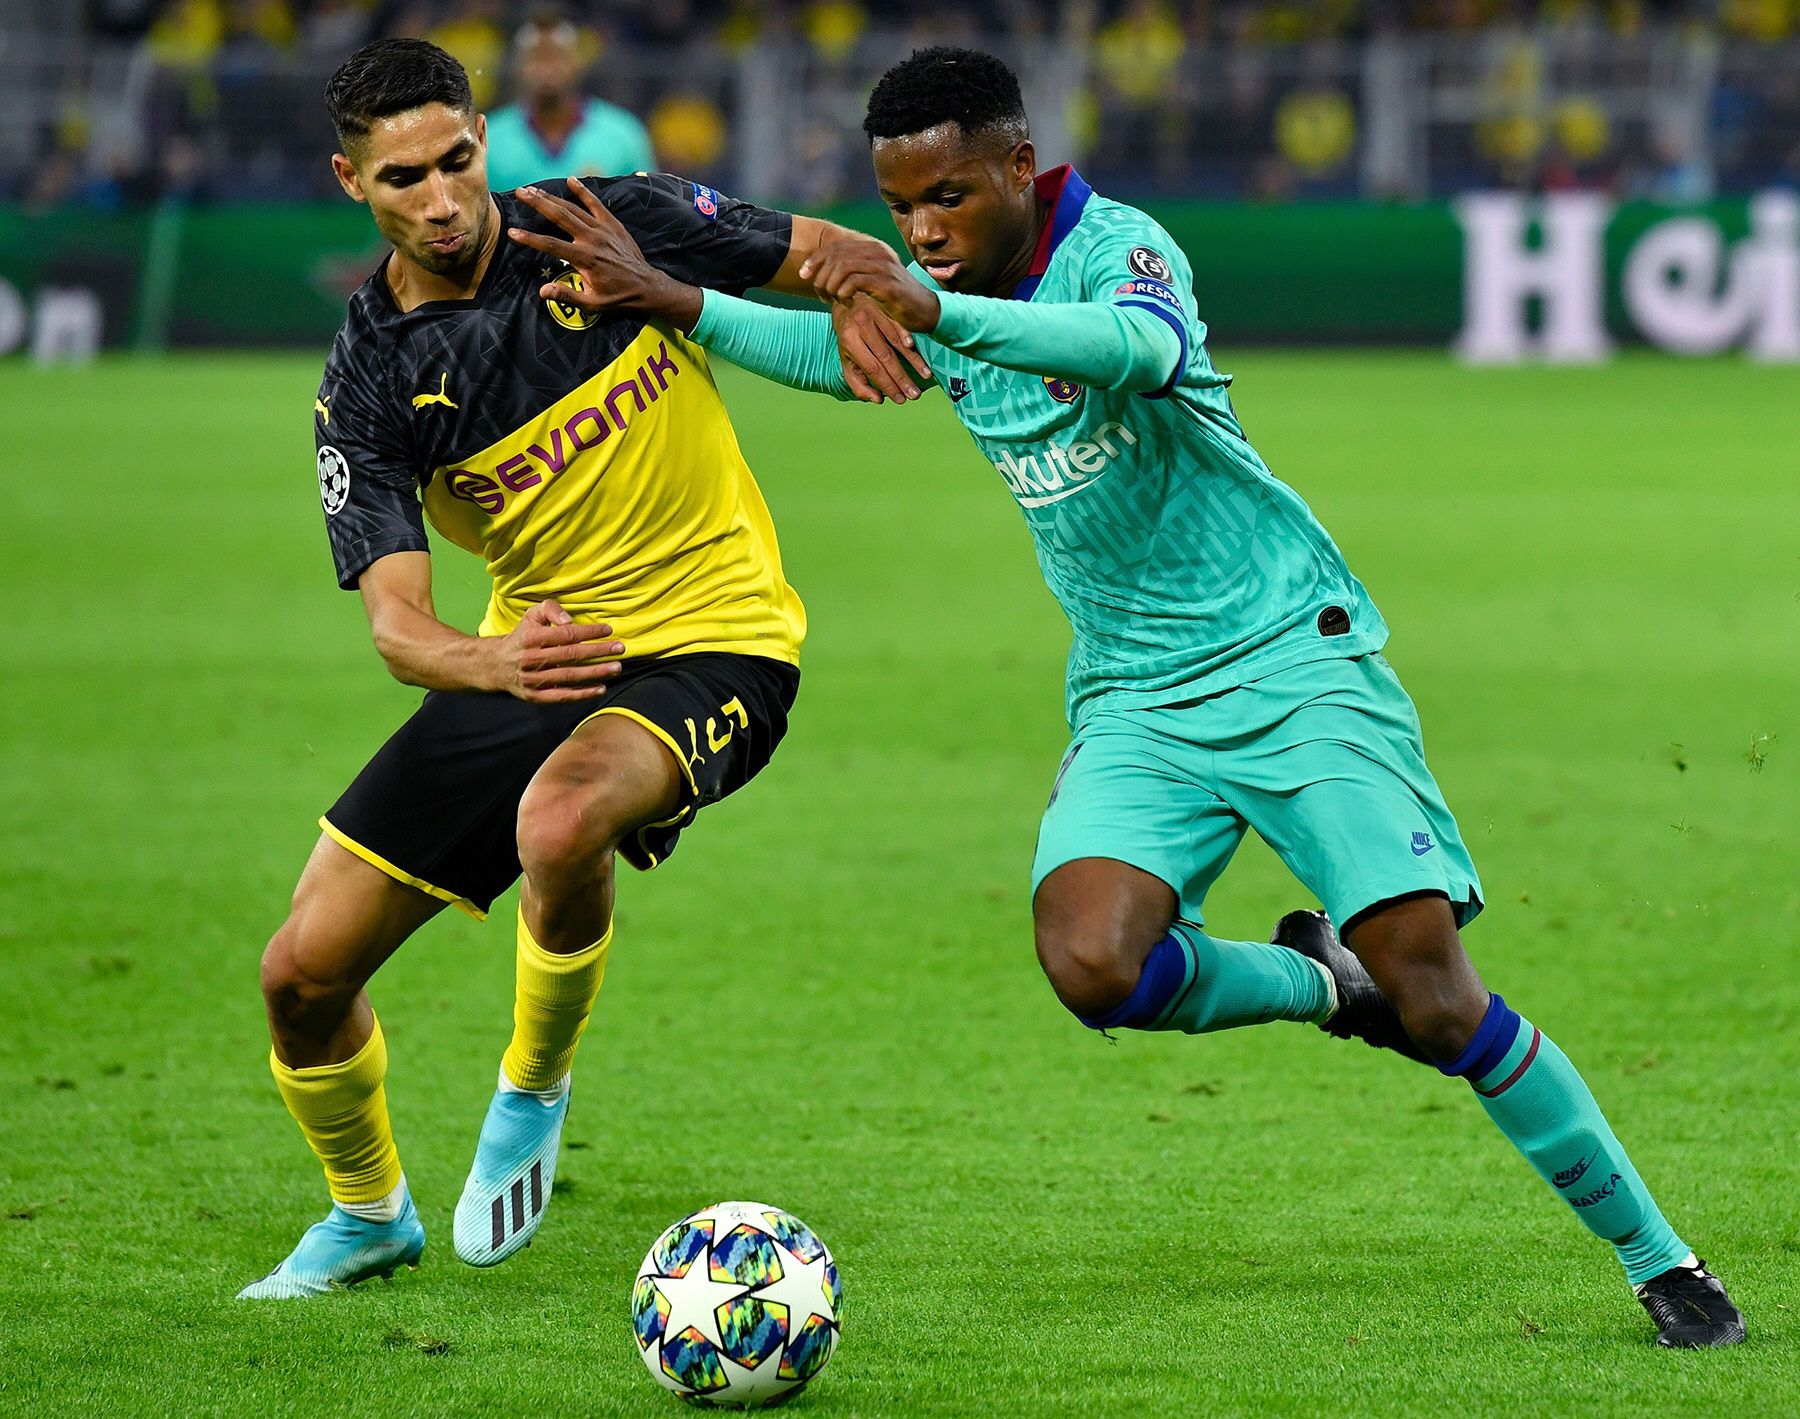 Ansu Fati during the match against Borussia Dortmund